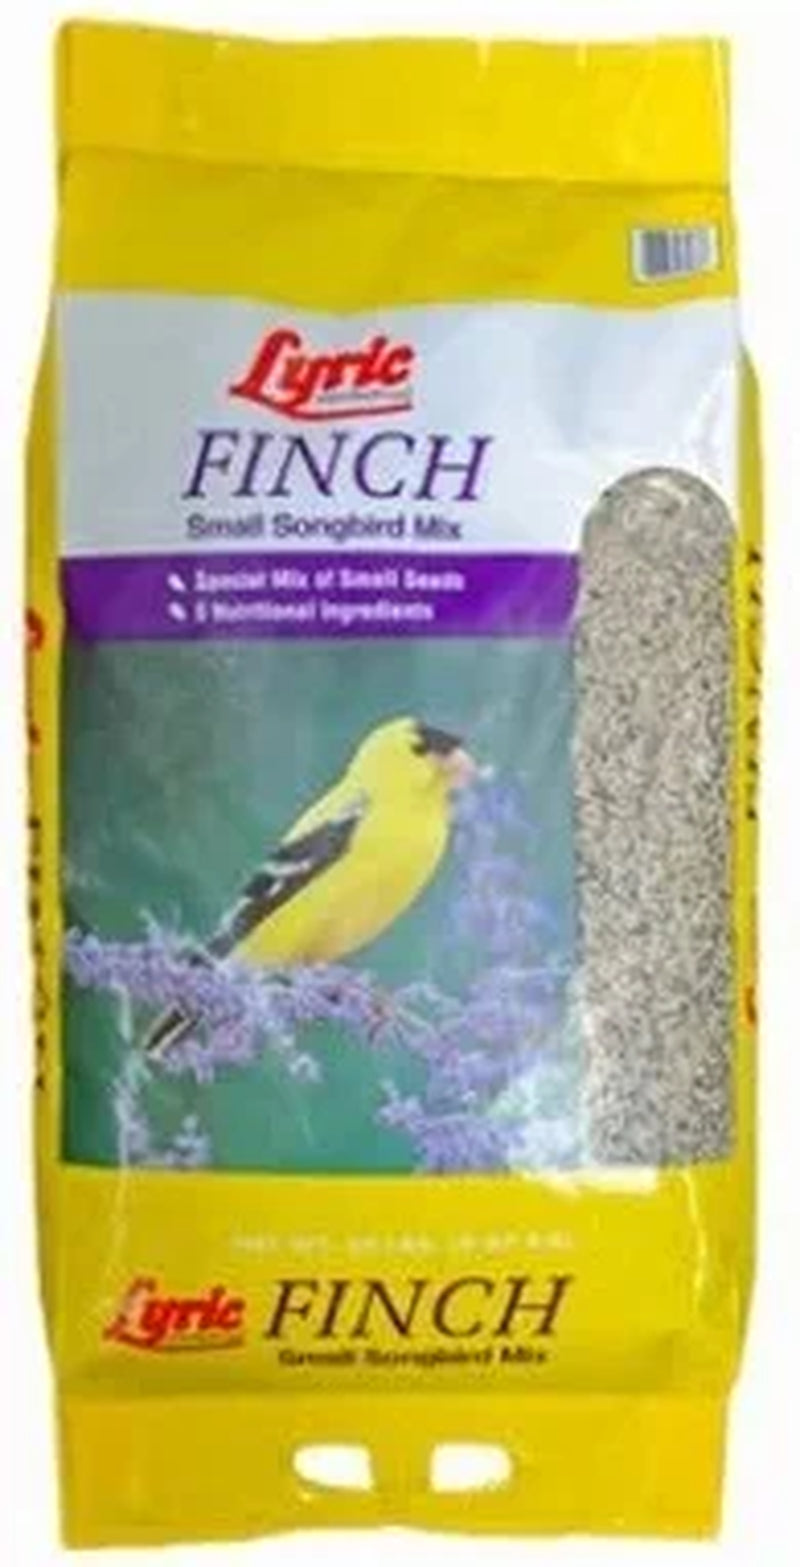 Lyric Finch Wild Bird Seed, Small Songbird Bird Finch Food, 20 Lb. Bag Animals & Pet Supplies > Pet Supplies > Bird Supplies > Bird Food Lebanon Seaboard Corporation   